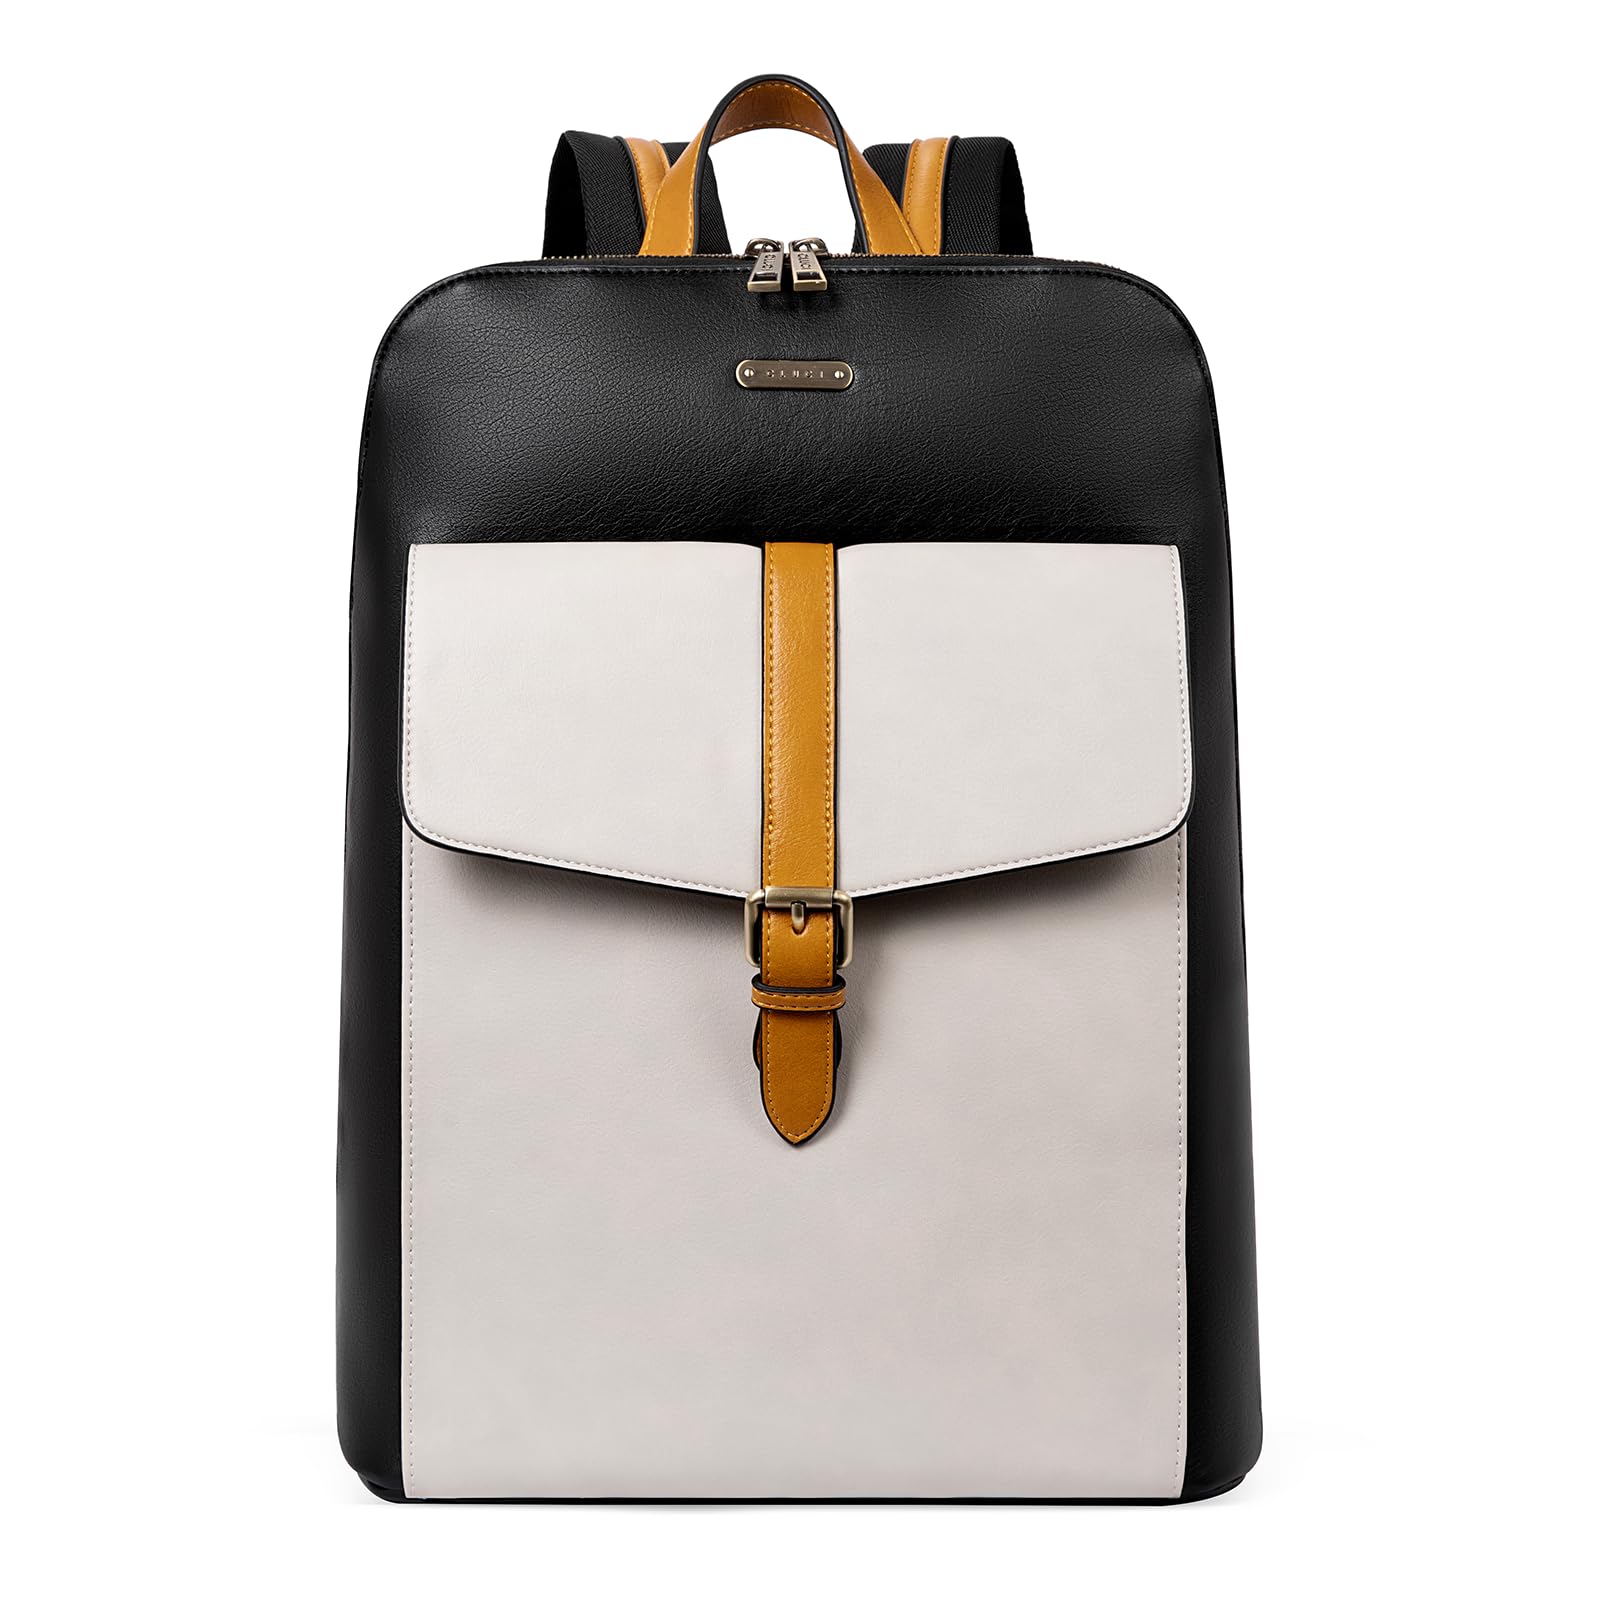 送料無料CLUCI Leather Laptop Backpack for Women 15.6 inch Computer Backpack Stylish Travel Backpack Purse for Women Work